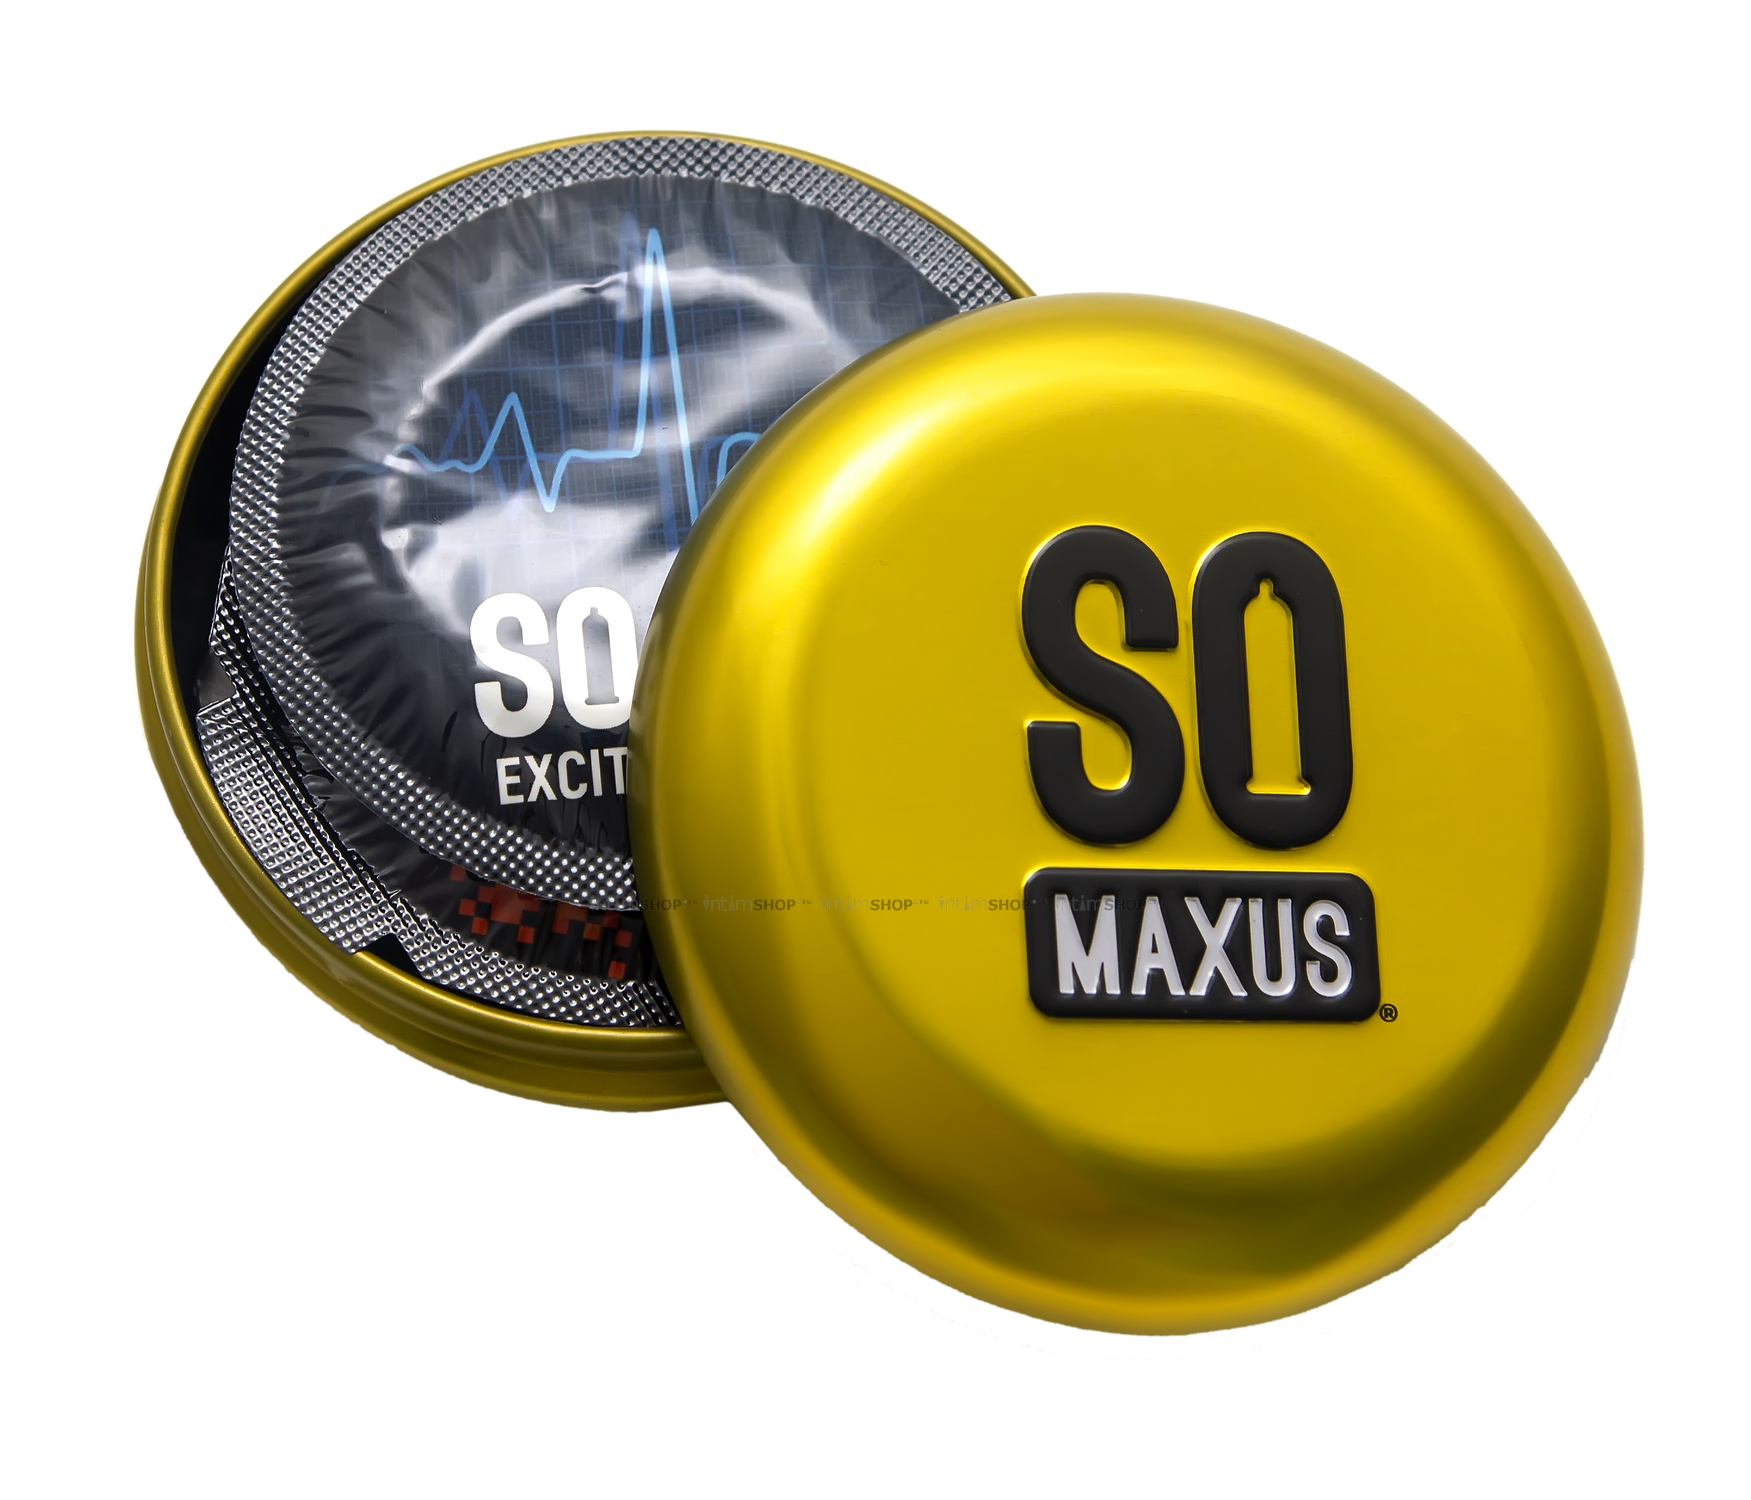 Презервативы точечно-ребристые Maxus Special, 15 шт